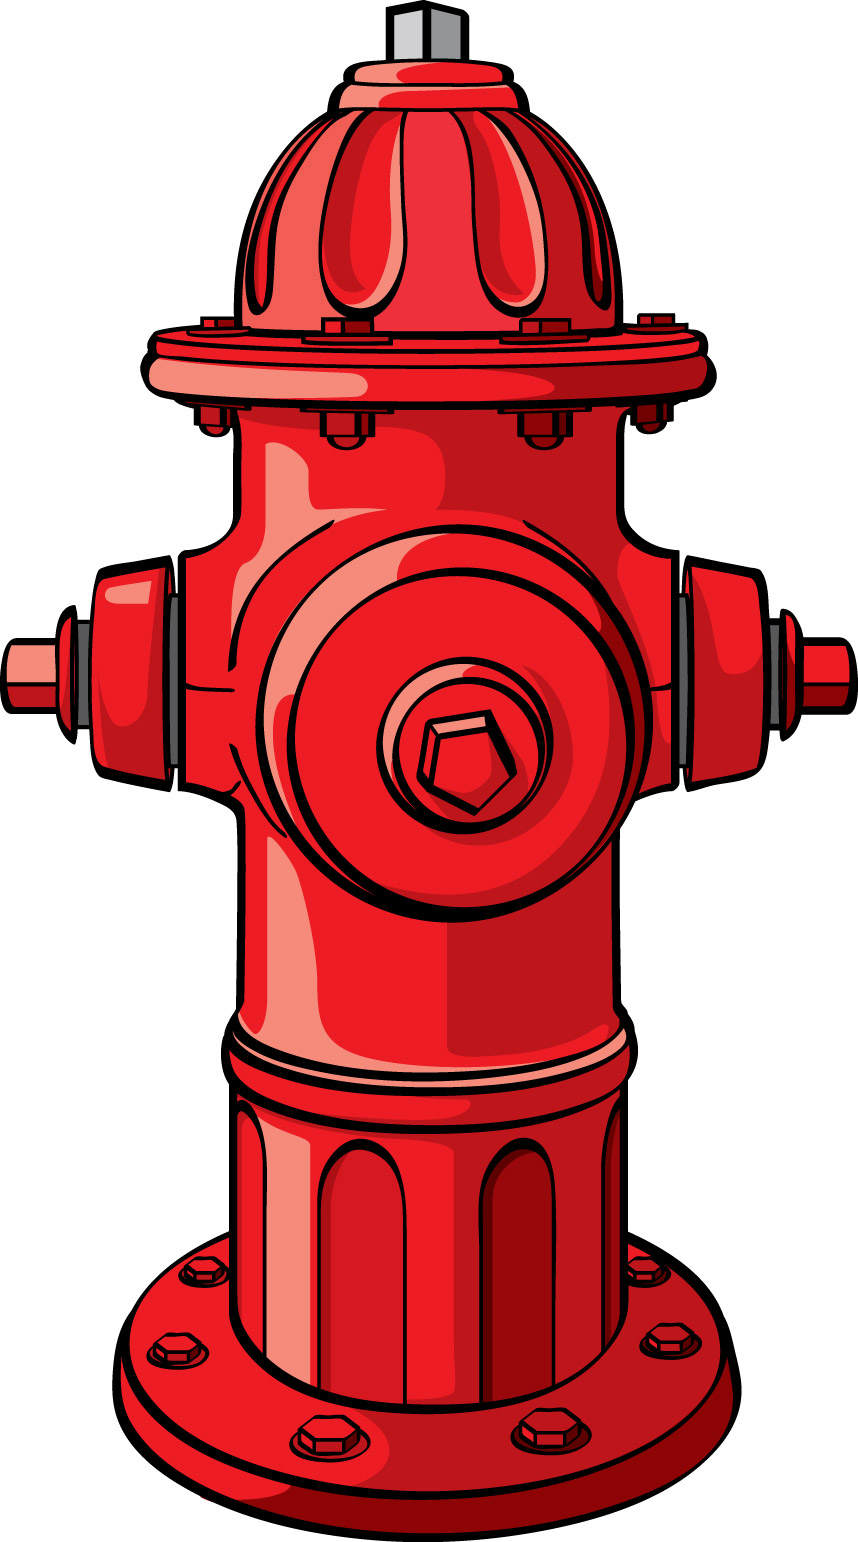 ... Fire hydrant clip art